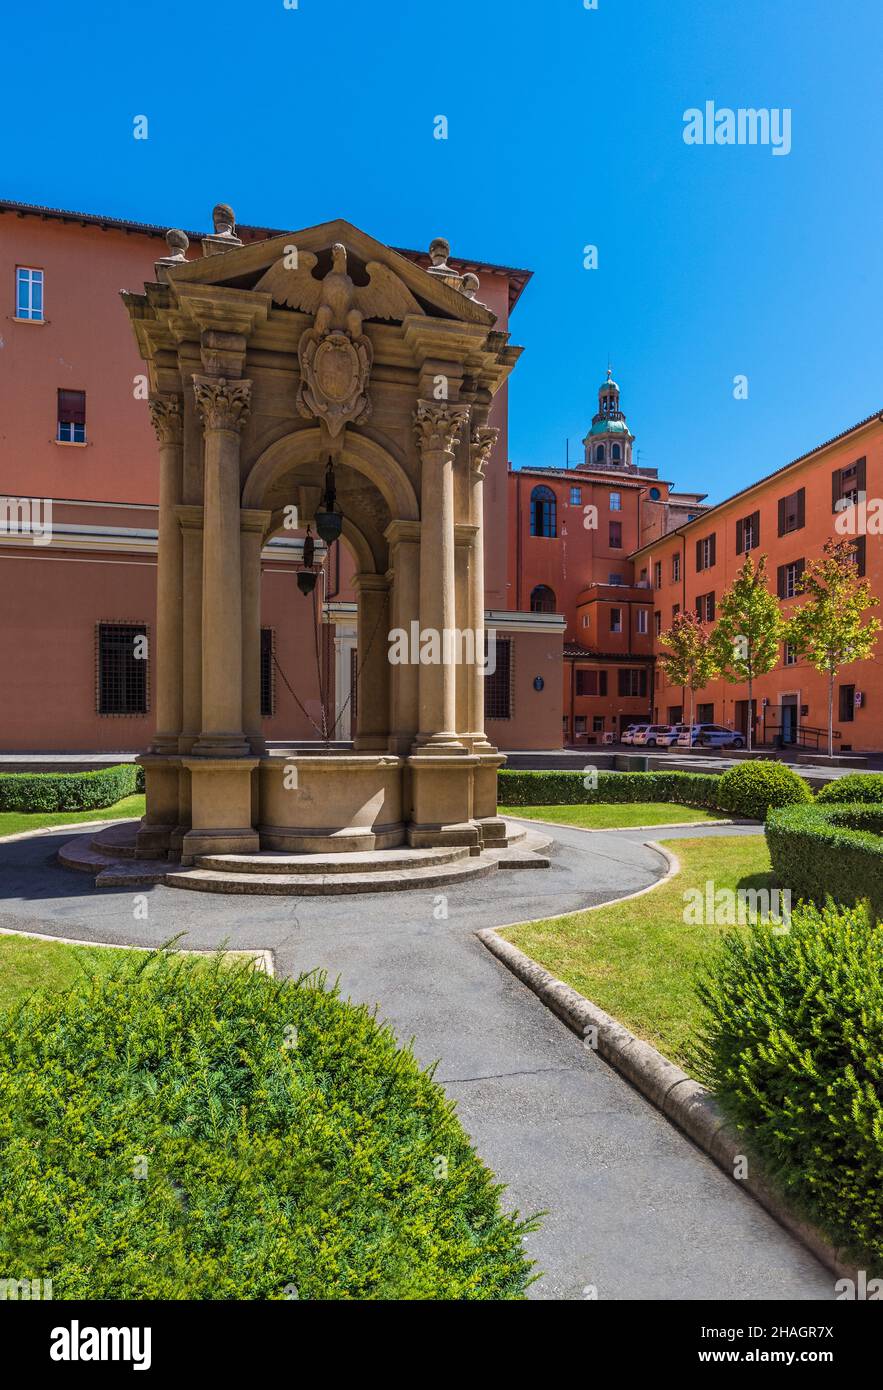 Bologna (Italien) - Ein Blick auf das historische Zentrum von Bologna, die Stadt der Veranden und die Hauptstadt der Region Emilia-Romagna, Norditalien Stockfoto